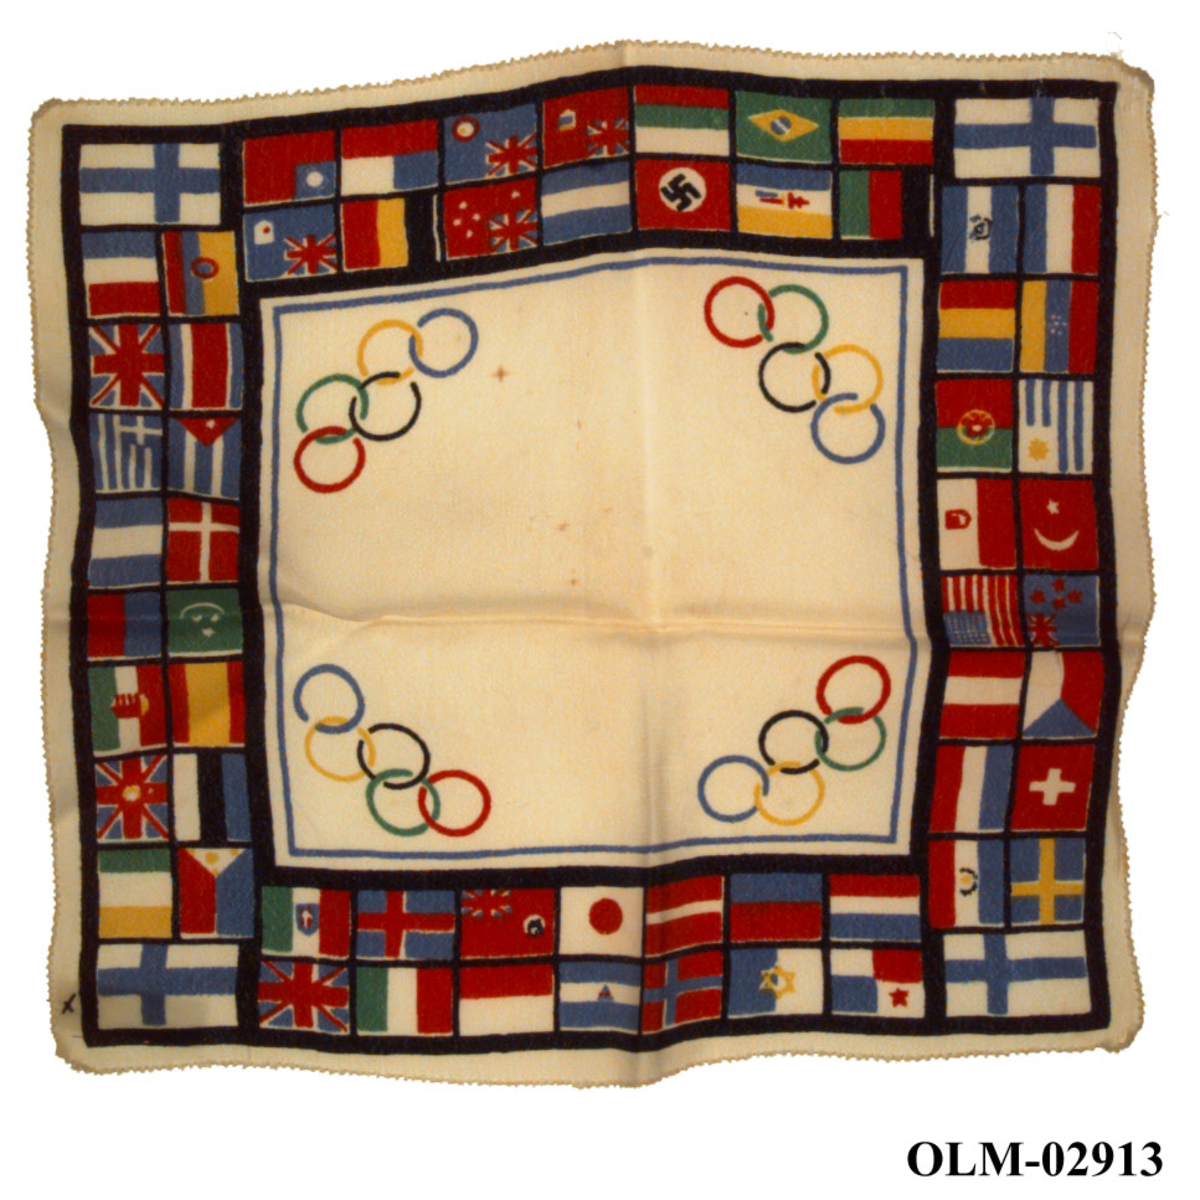 Flerfarget lommetørkle dekorert med de olympiske ringene og motiver av nasjonsflagg. Ett flagg har motiv av hakekorset.